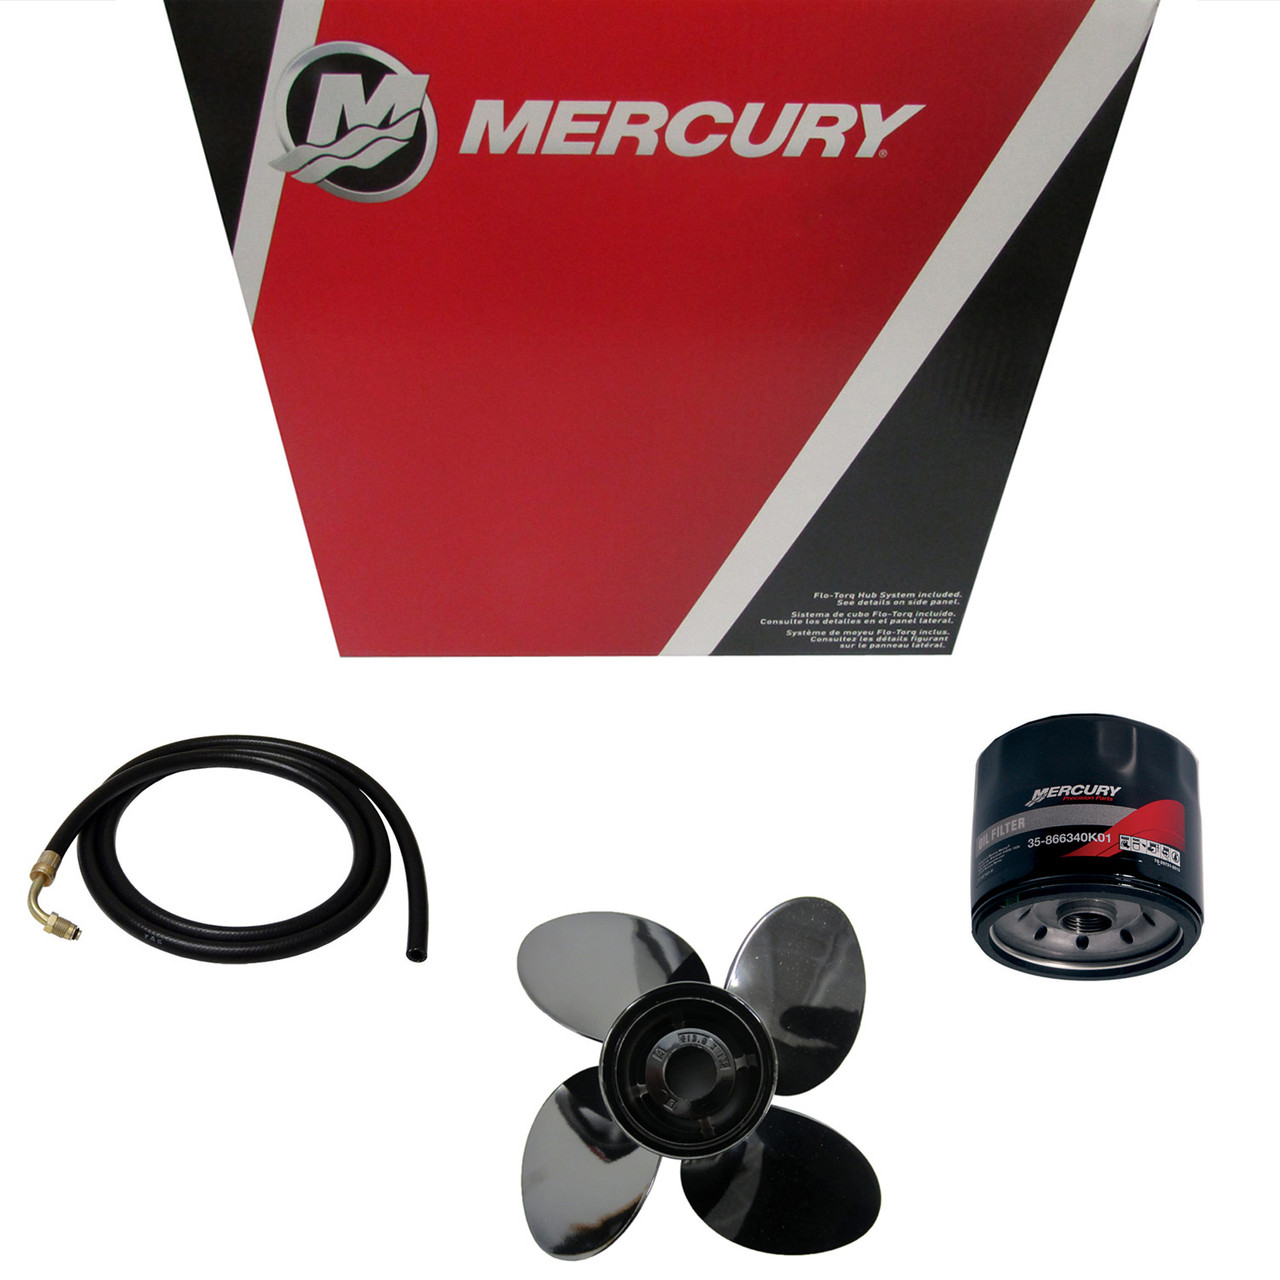 Mercury Marine / Mercruiser New OEM Key, 28-8M0032831